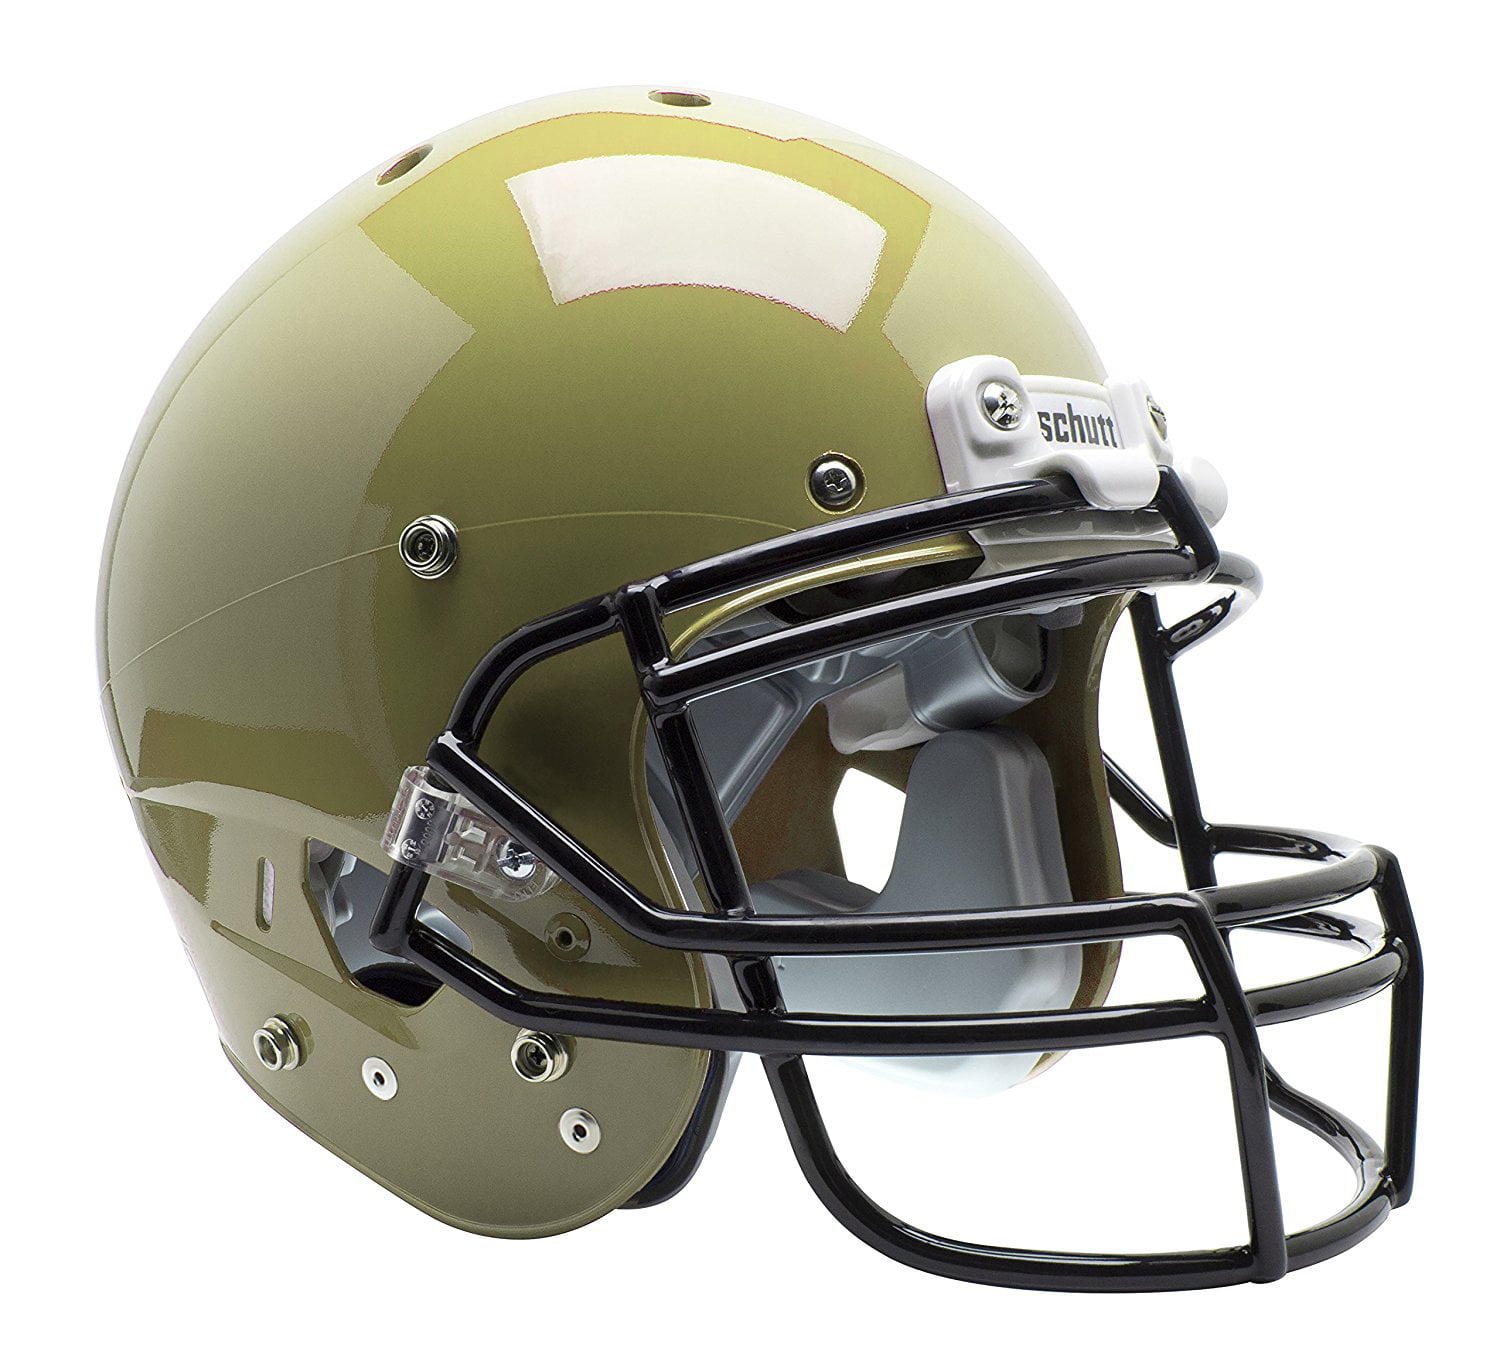 SUNFLOWER GOLD Schutt AiR XP Pro VTD II Football Helmet ADULT LARGE w/ Facemask 